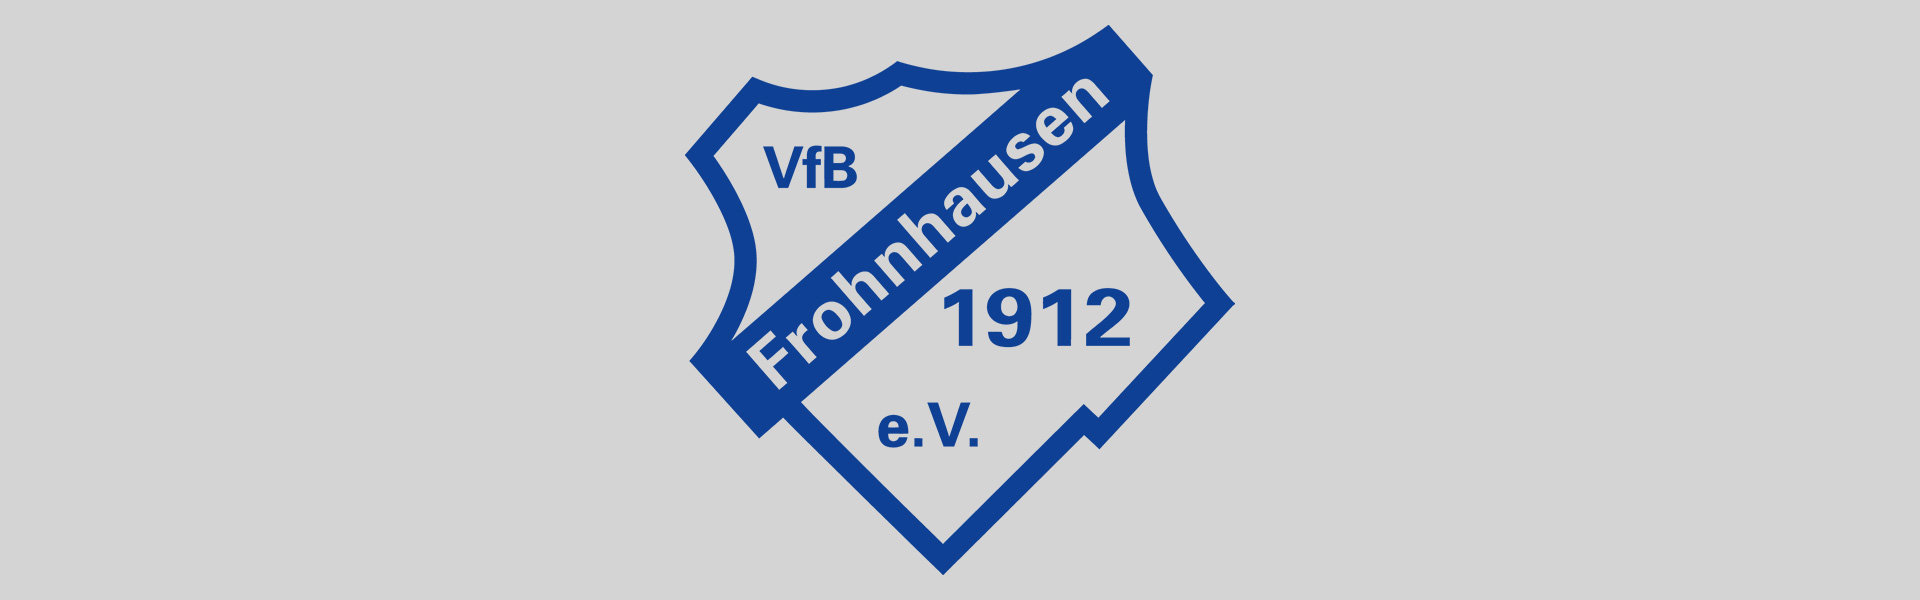 Rettet den VfB Frohnhausen!